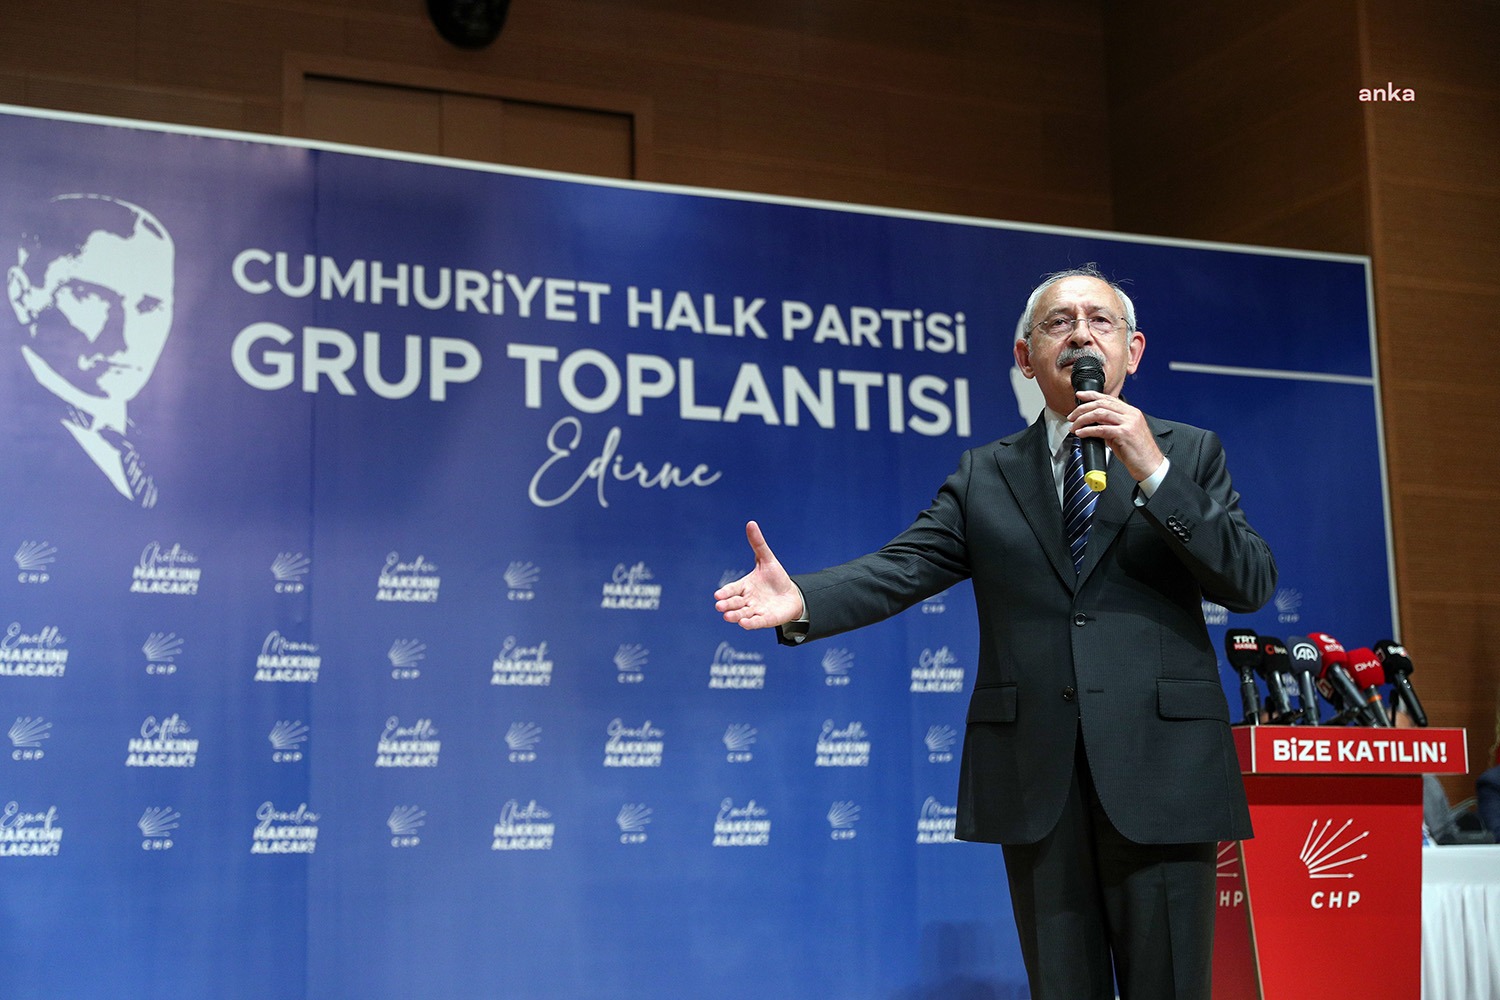 CHP Genel Başkanı Kılıçdaroğlu, Edirne’de: “Saray Merakımız Yok. Ülkemizi Mütevazı Çankaya’dan Yönetmek İsteriz”